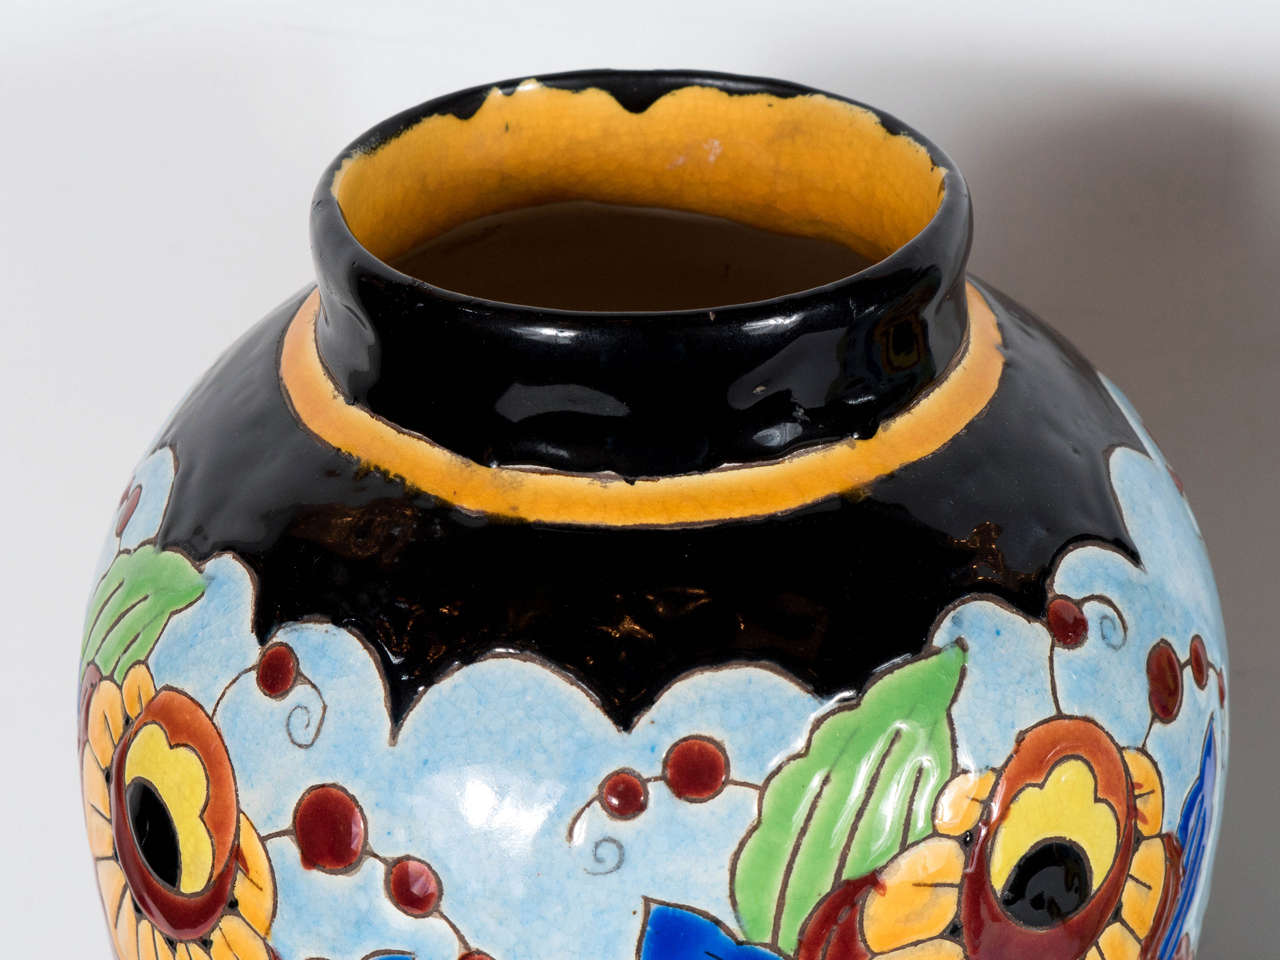 Mid-20th Century Exquisite Pair of Art Deco Hand-Painted Ceramic Vases by Keramis